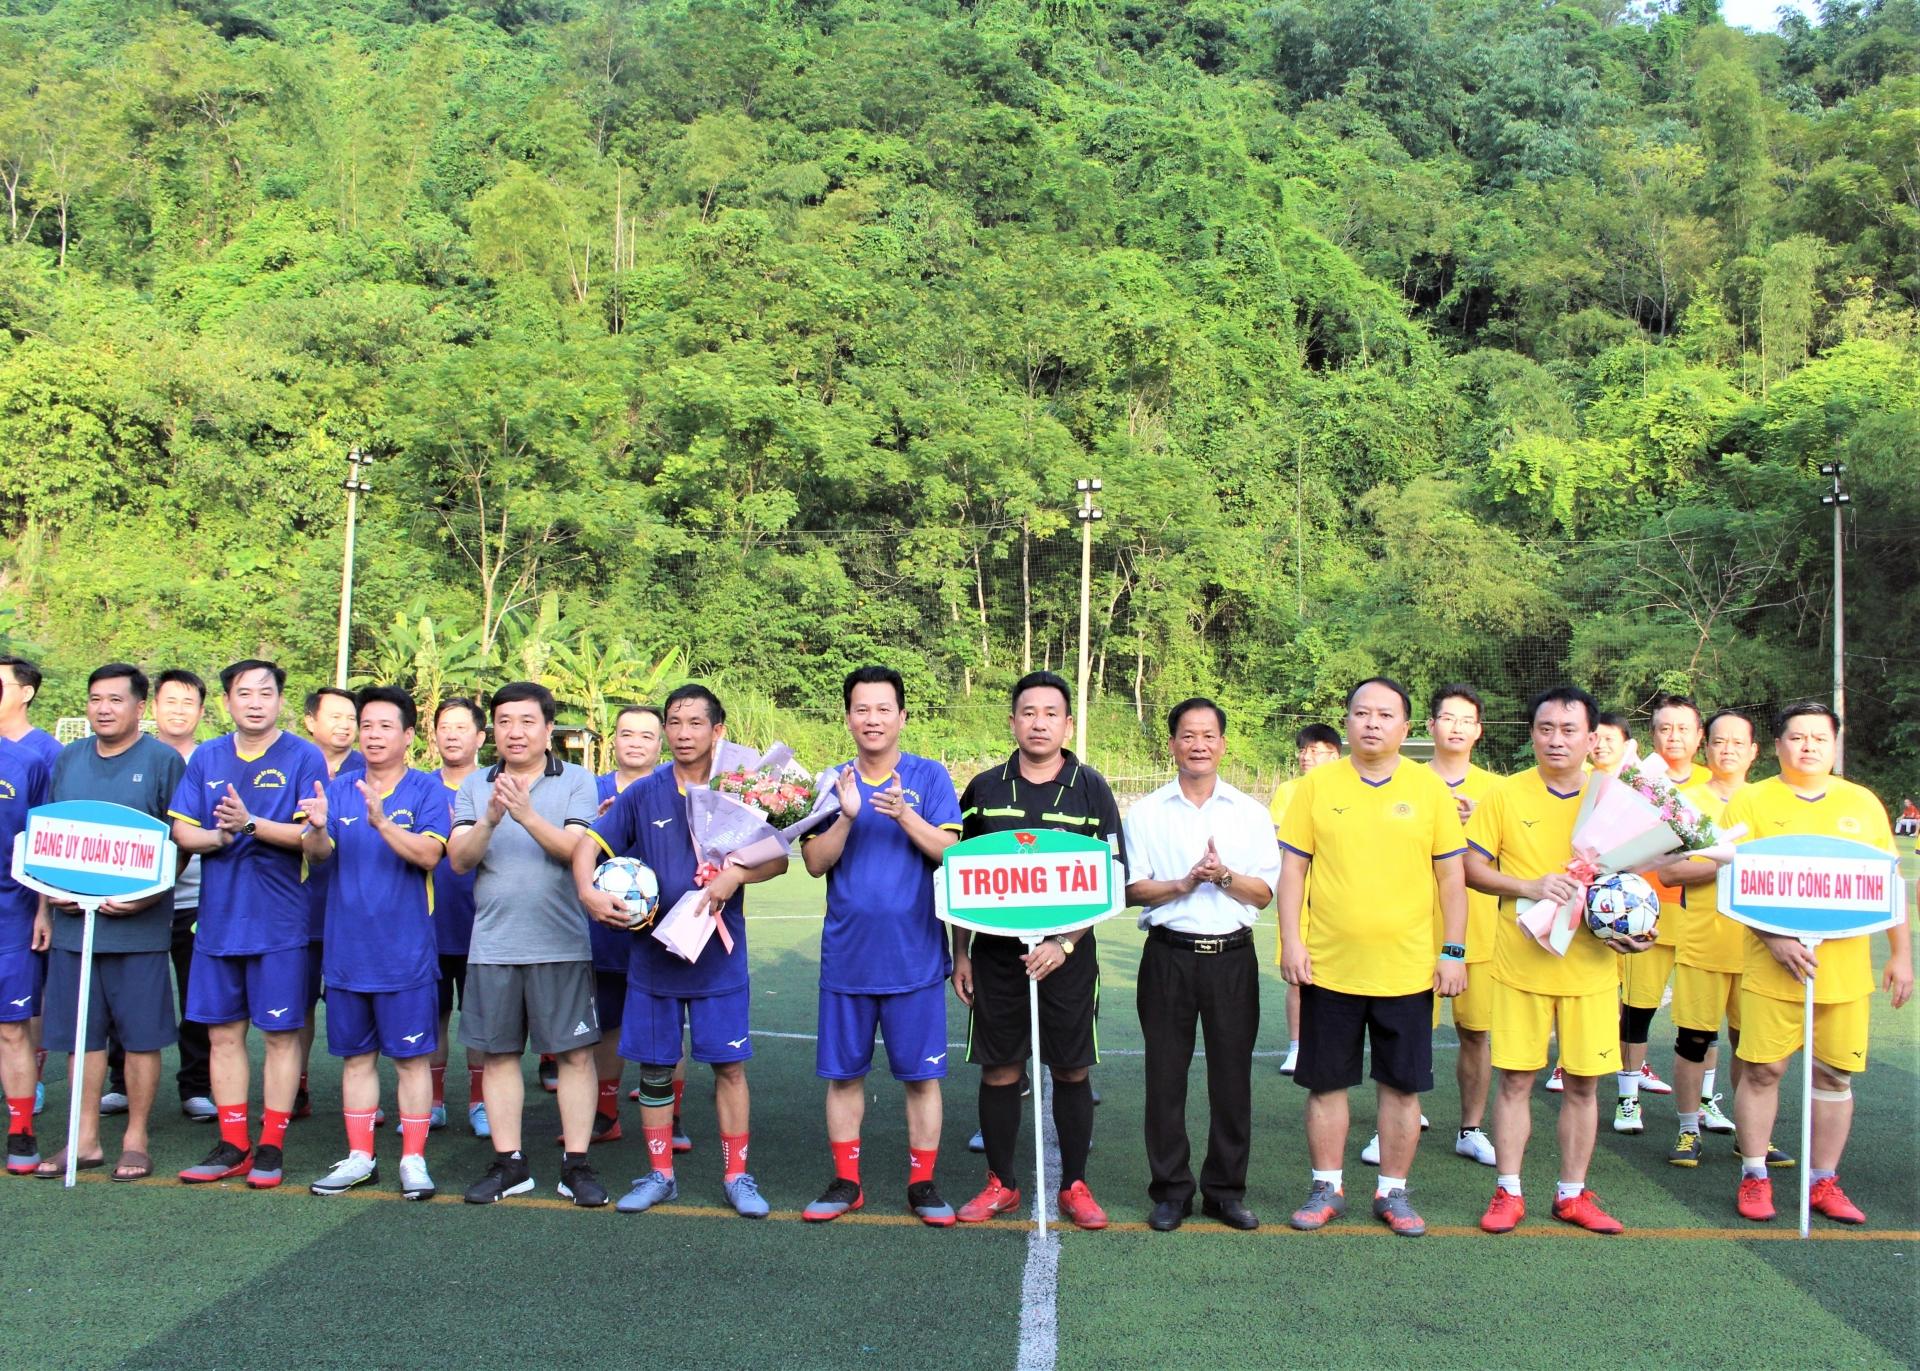 BTC trao cờ lưu niệm cho các đội tham gia giao lưu bóng đá nam chào mừng Cách mạng tháng Tám và Quốc khánh 2.9